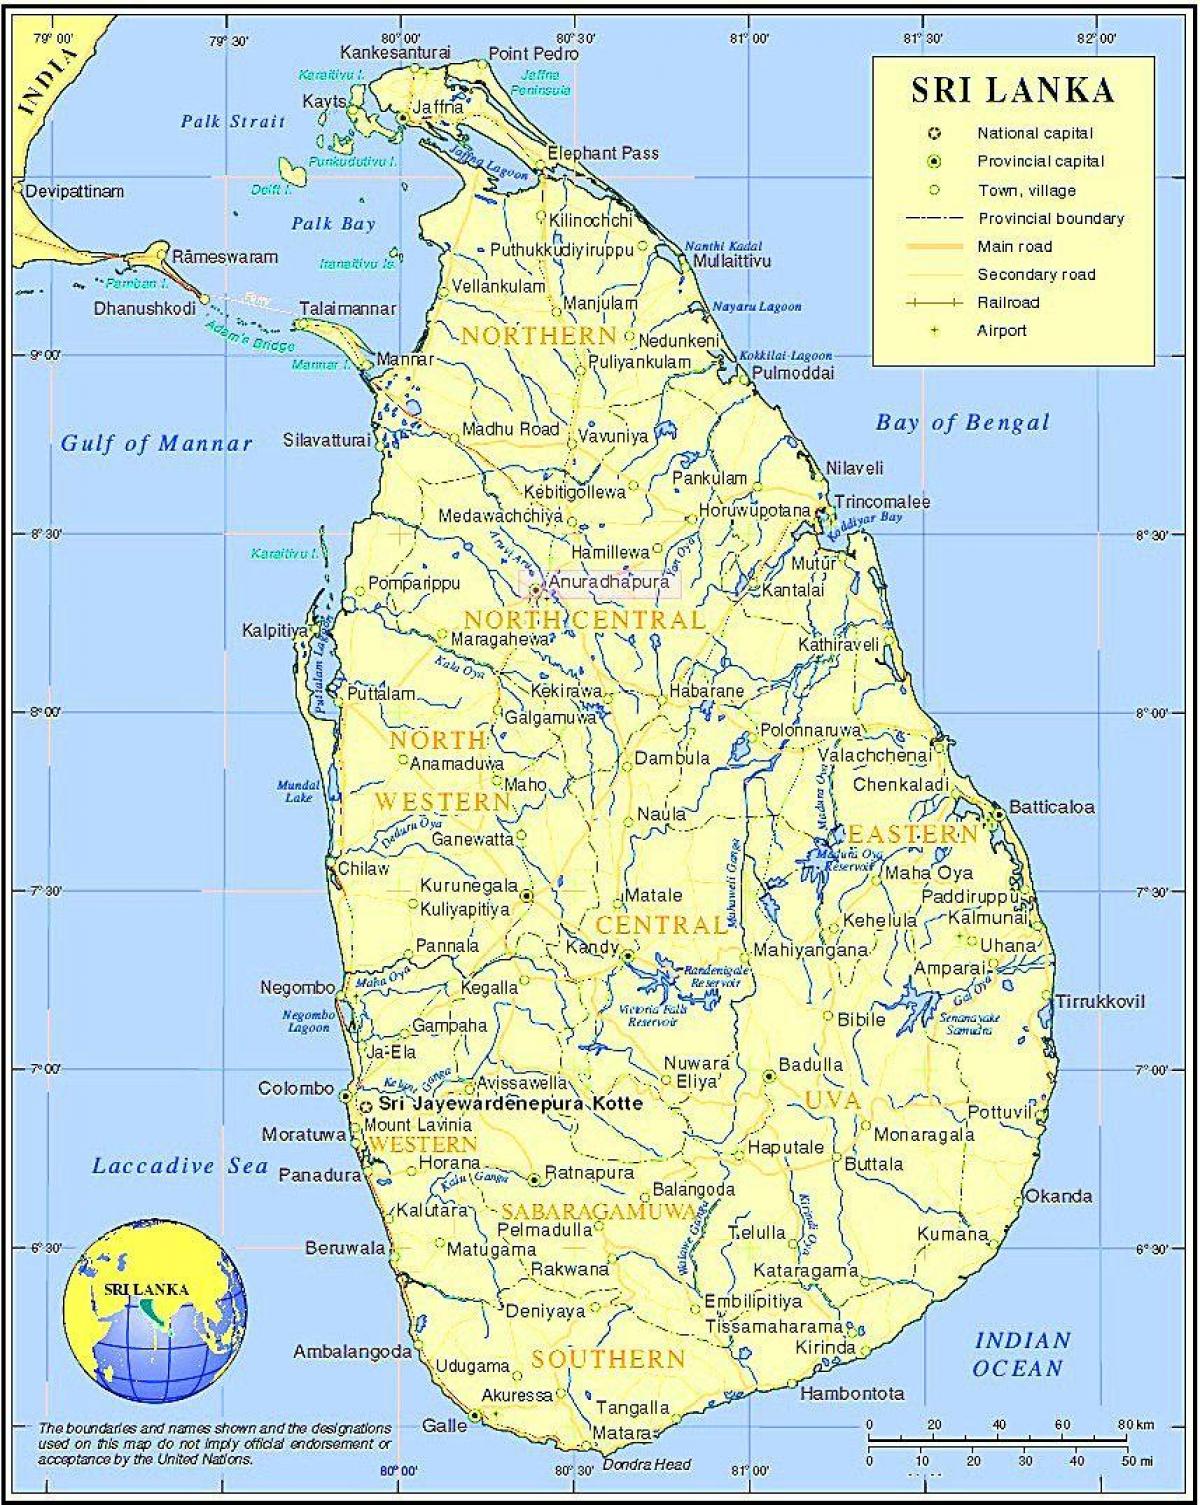 Sri Lanka tren sarearen mapa